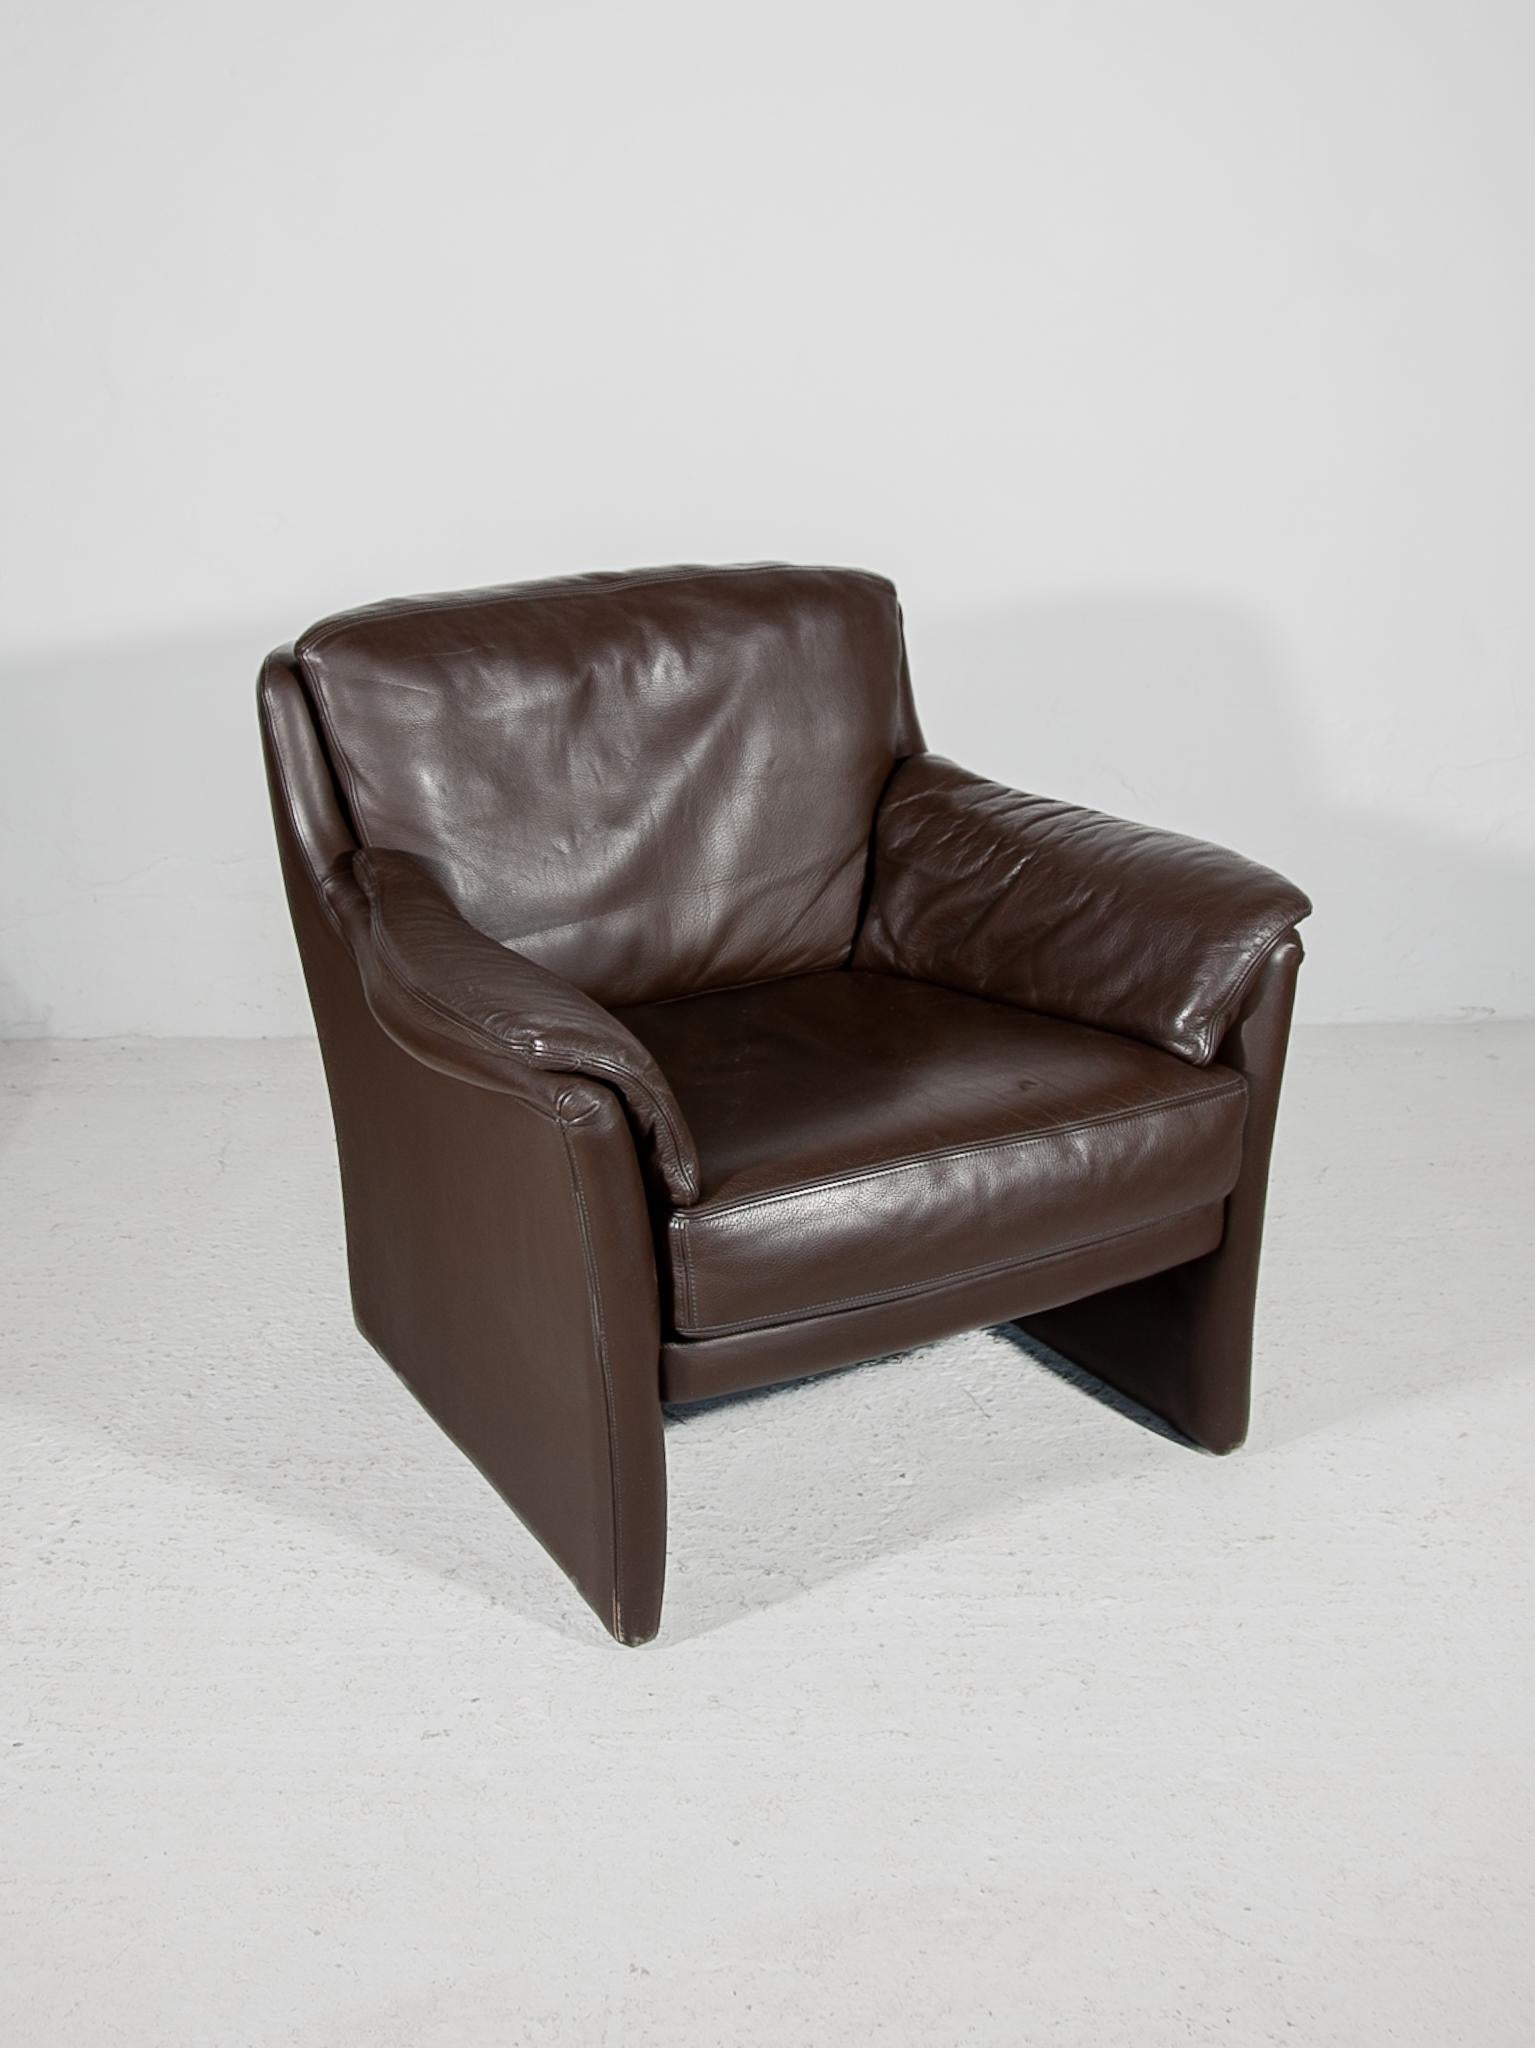 Vintage Durlet Sessel, Belgien 1970er Jahre. Klassische Linien, hochwertiges Büffelleder - der Sitzkomfort ist ausgezeichnet!
Auch ein Zweisitzer-Sofa und ein Dreisitzer-Sofa siehe unsere anderen Marktplatz-Hörproben.
Komplettes Wohnzimmerset 1970er